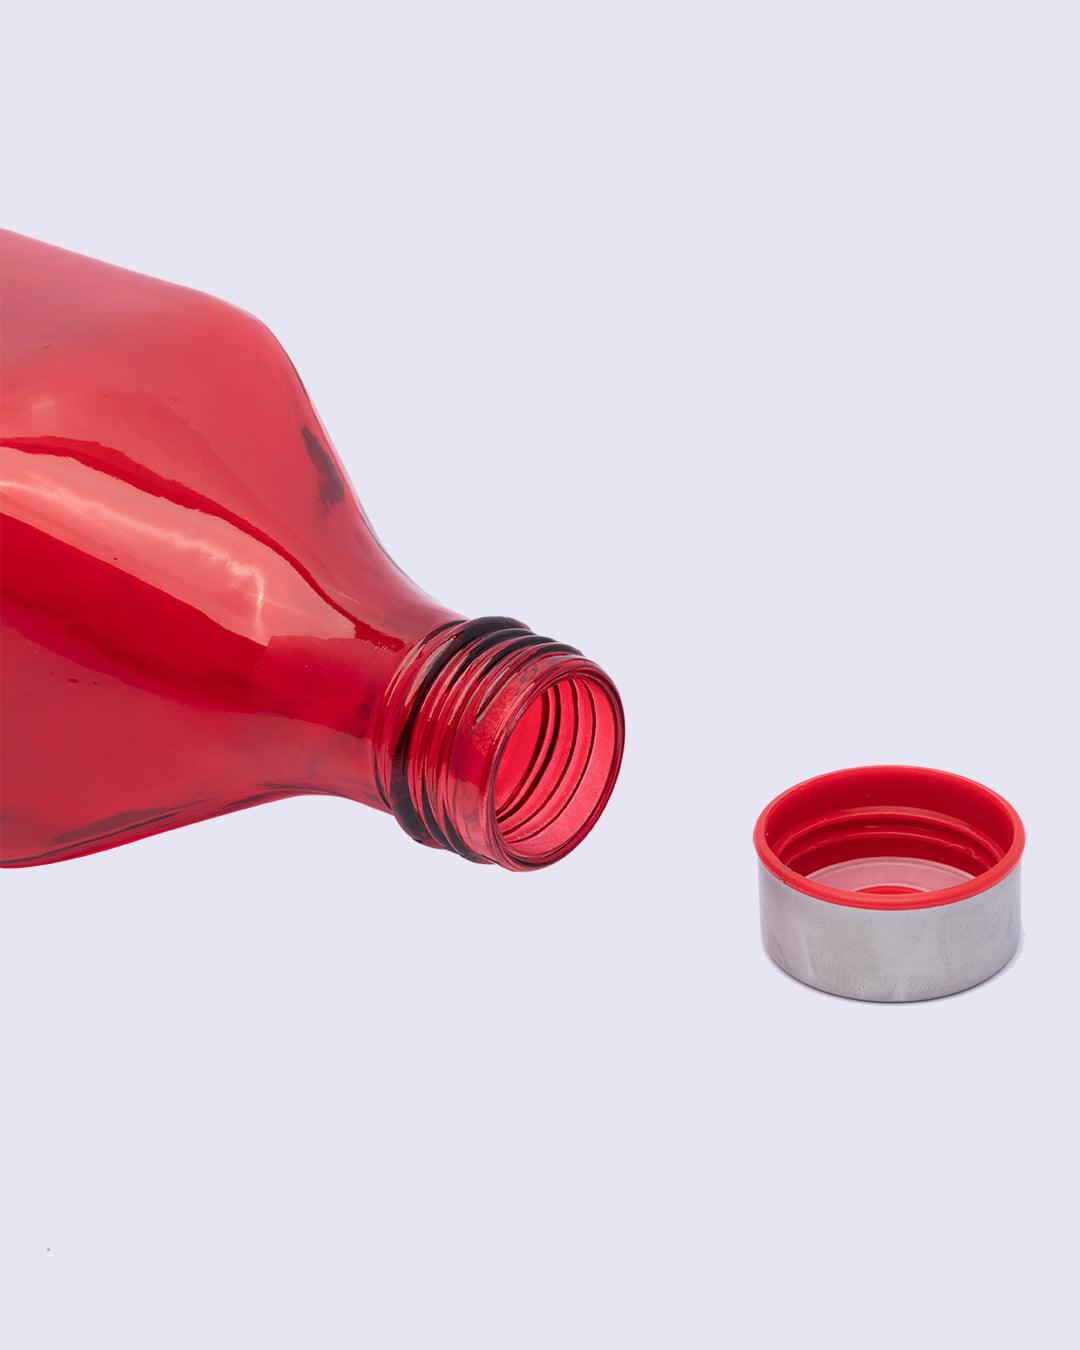 Glass Bottle, Water Bottle, Modern Design, Red, Glass, 1.1 Litre - MARKET 99